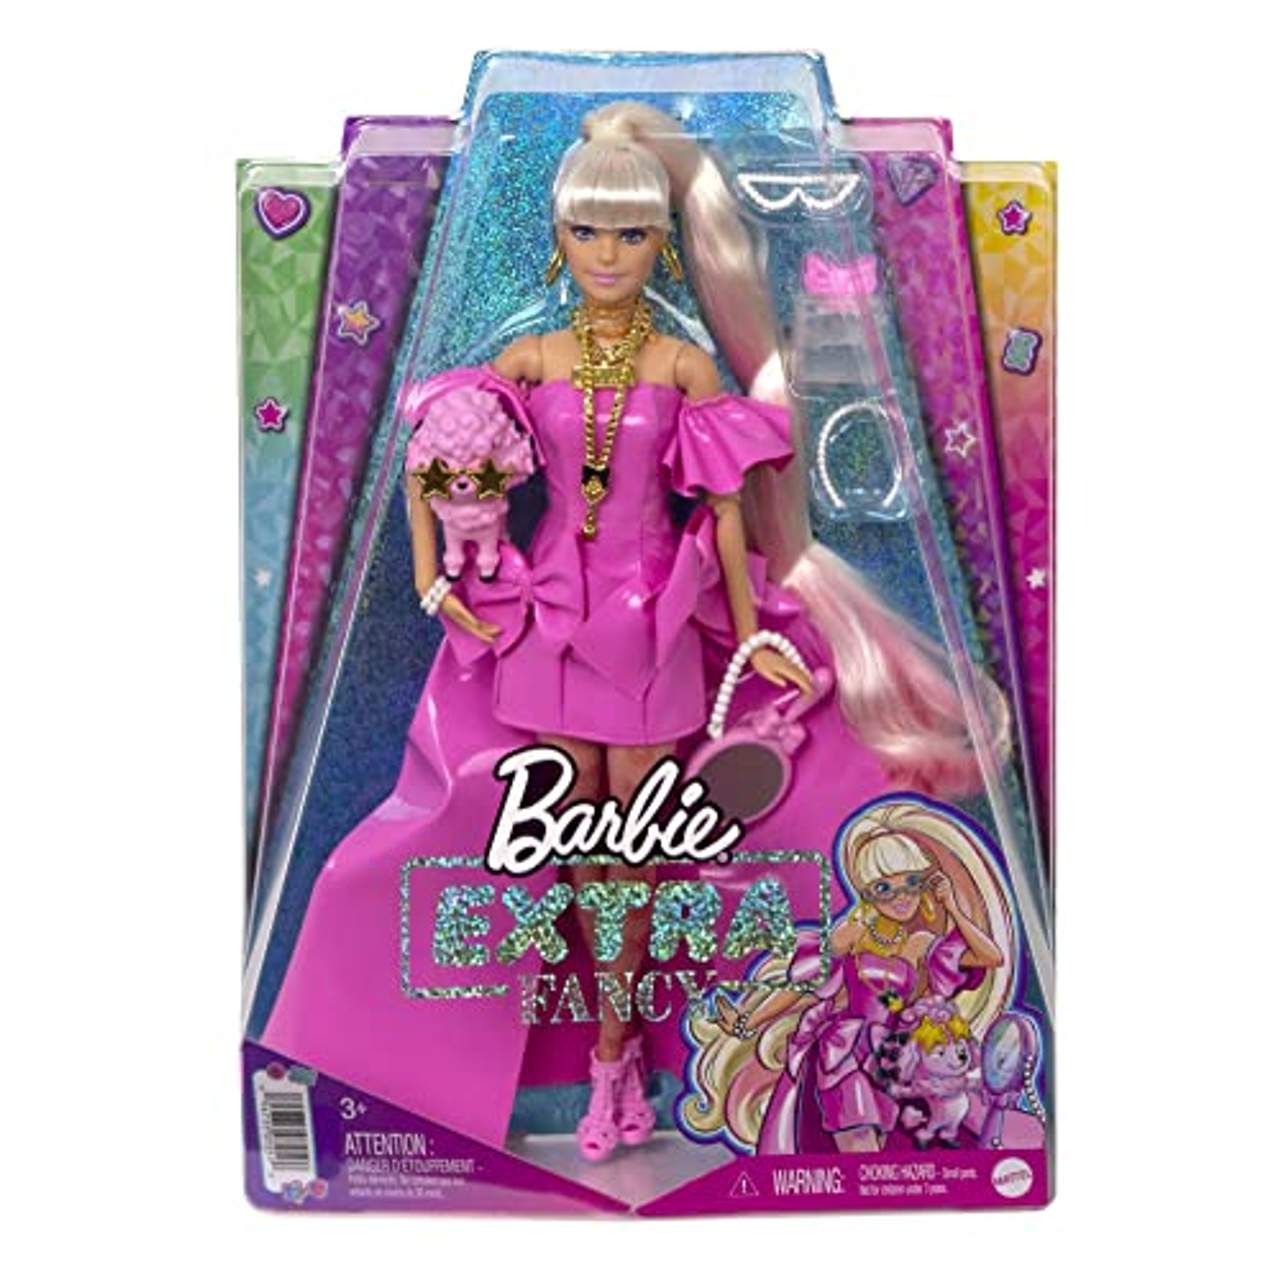 Barbie HHN12 Extra Fancy Puppe in asymmetrischem